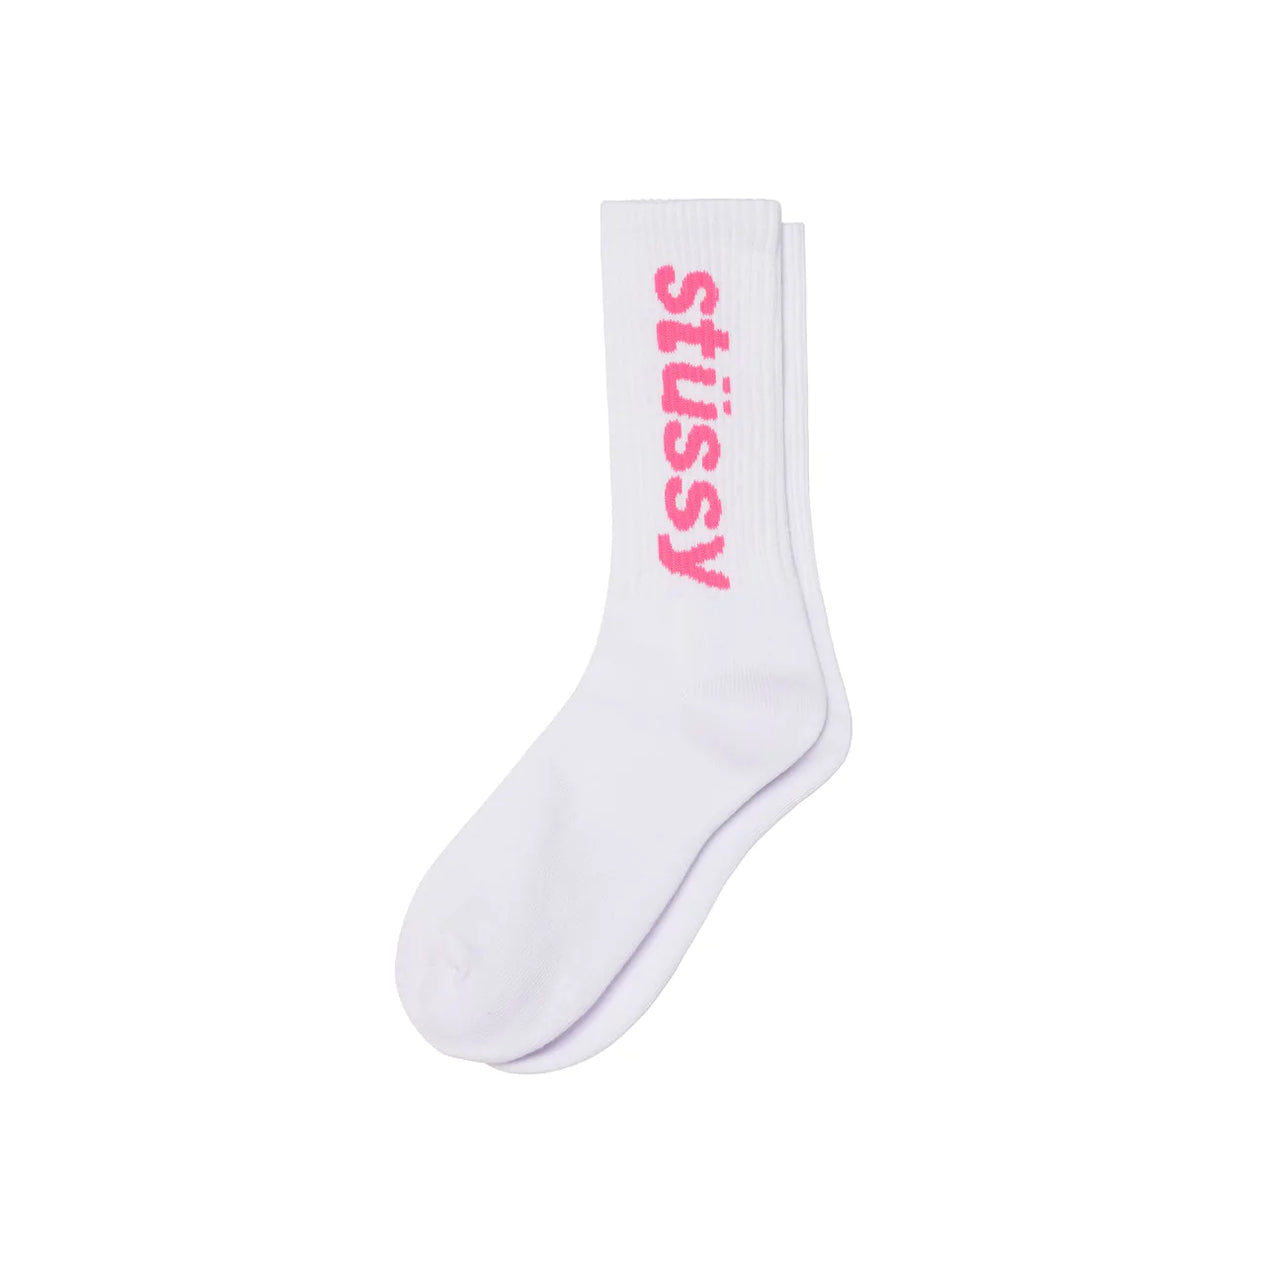 Helvetica Crew Socks White Pink